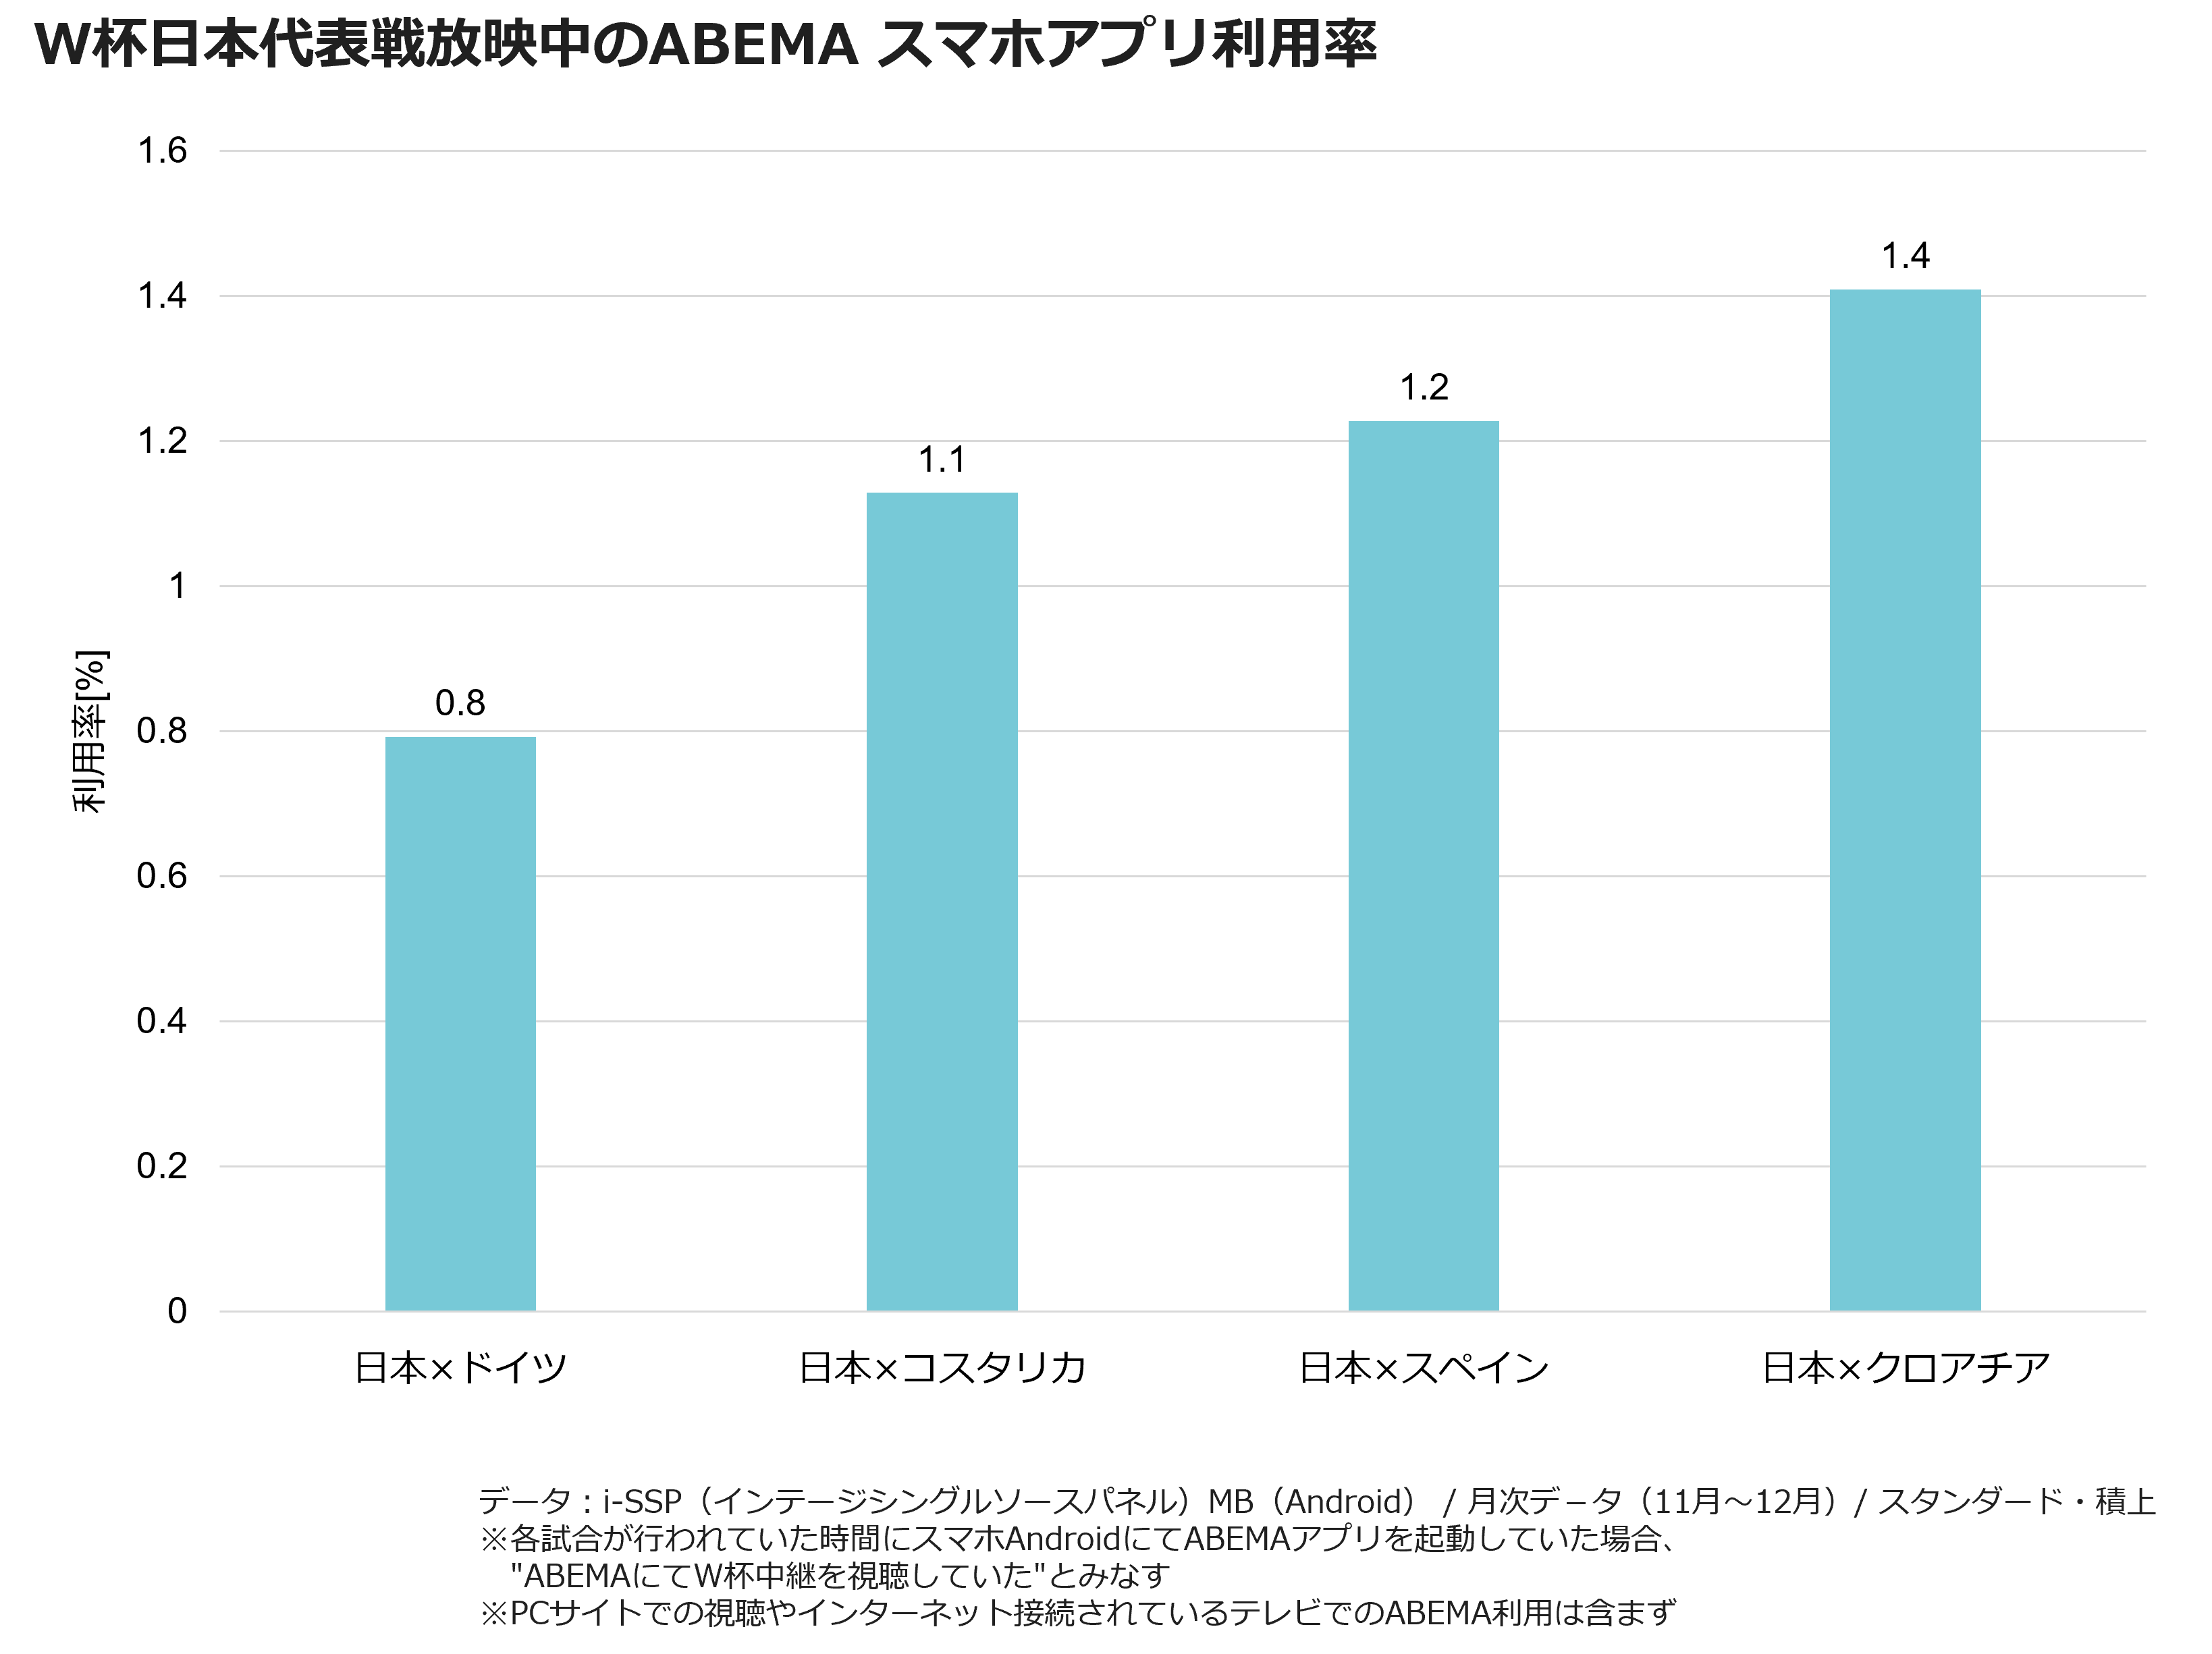 W杯日本代表戦放送中のABEMA スマホアプリ利用率